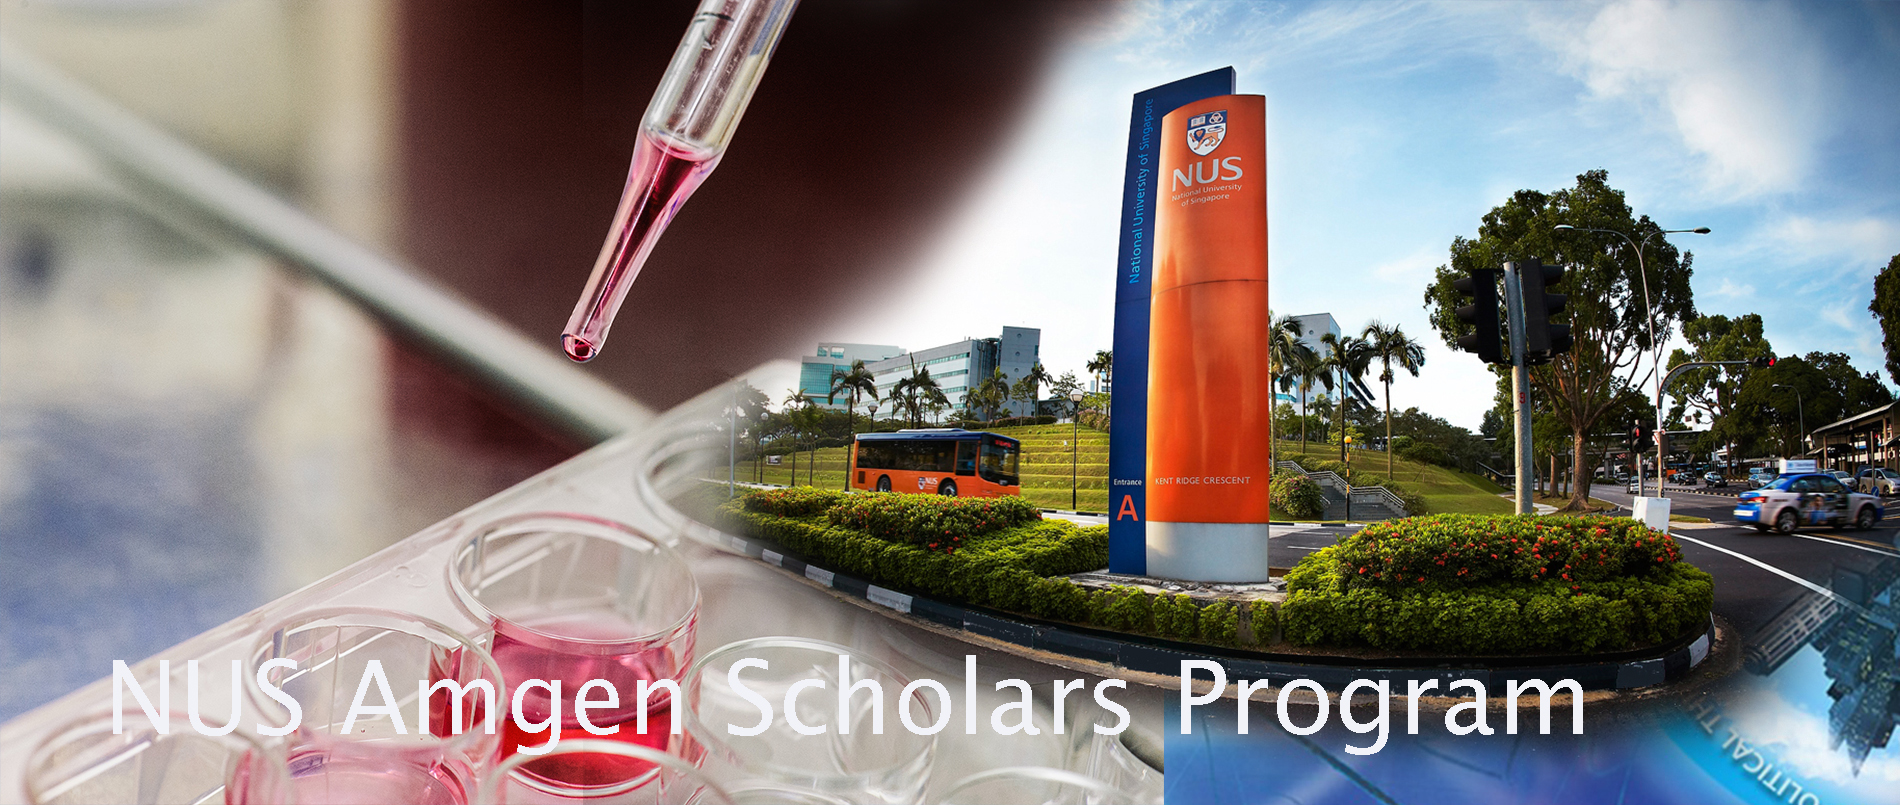 NUS Amgen Scholars Program